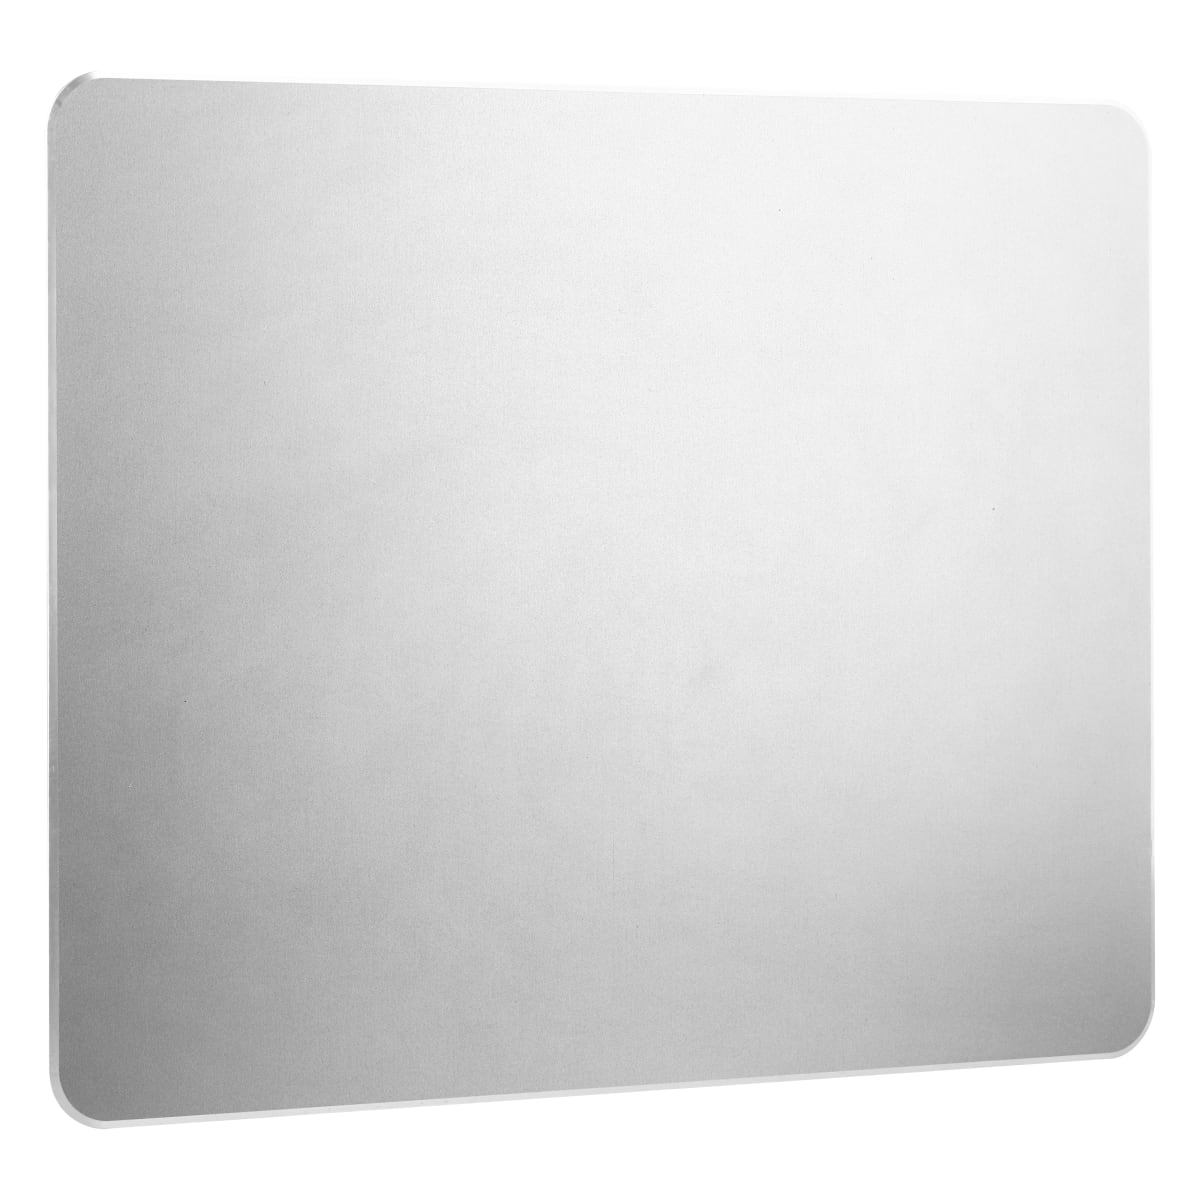 Aluminium mouse pad iClick